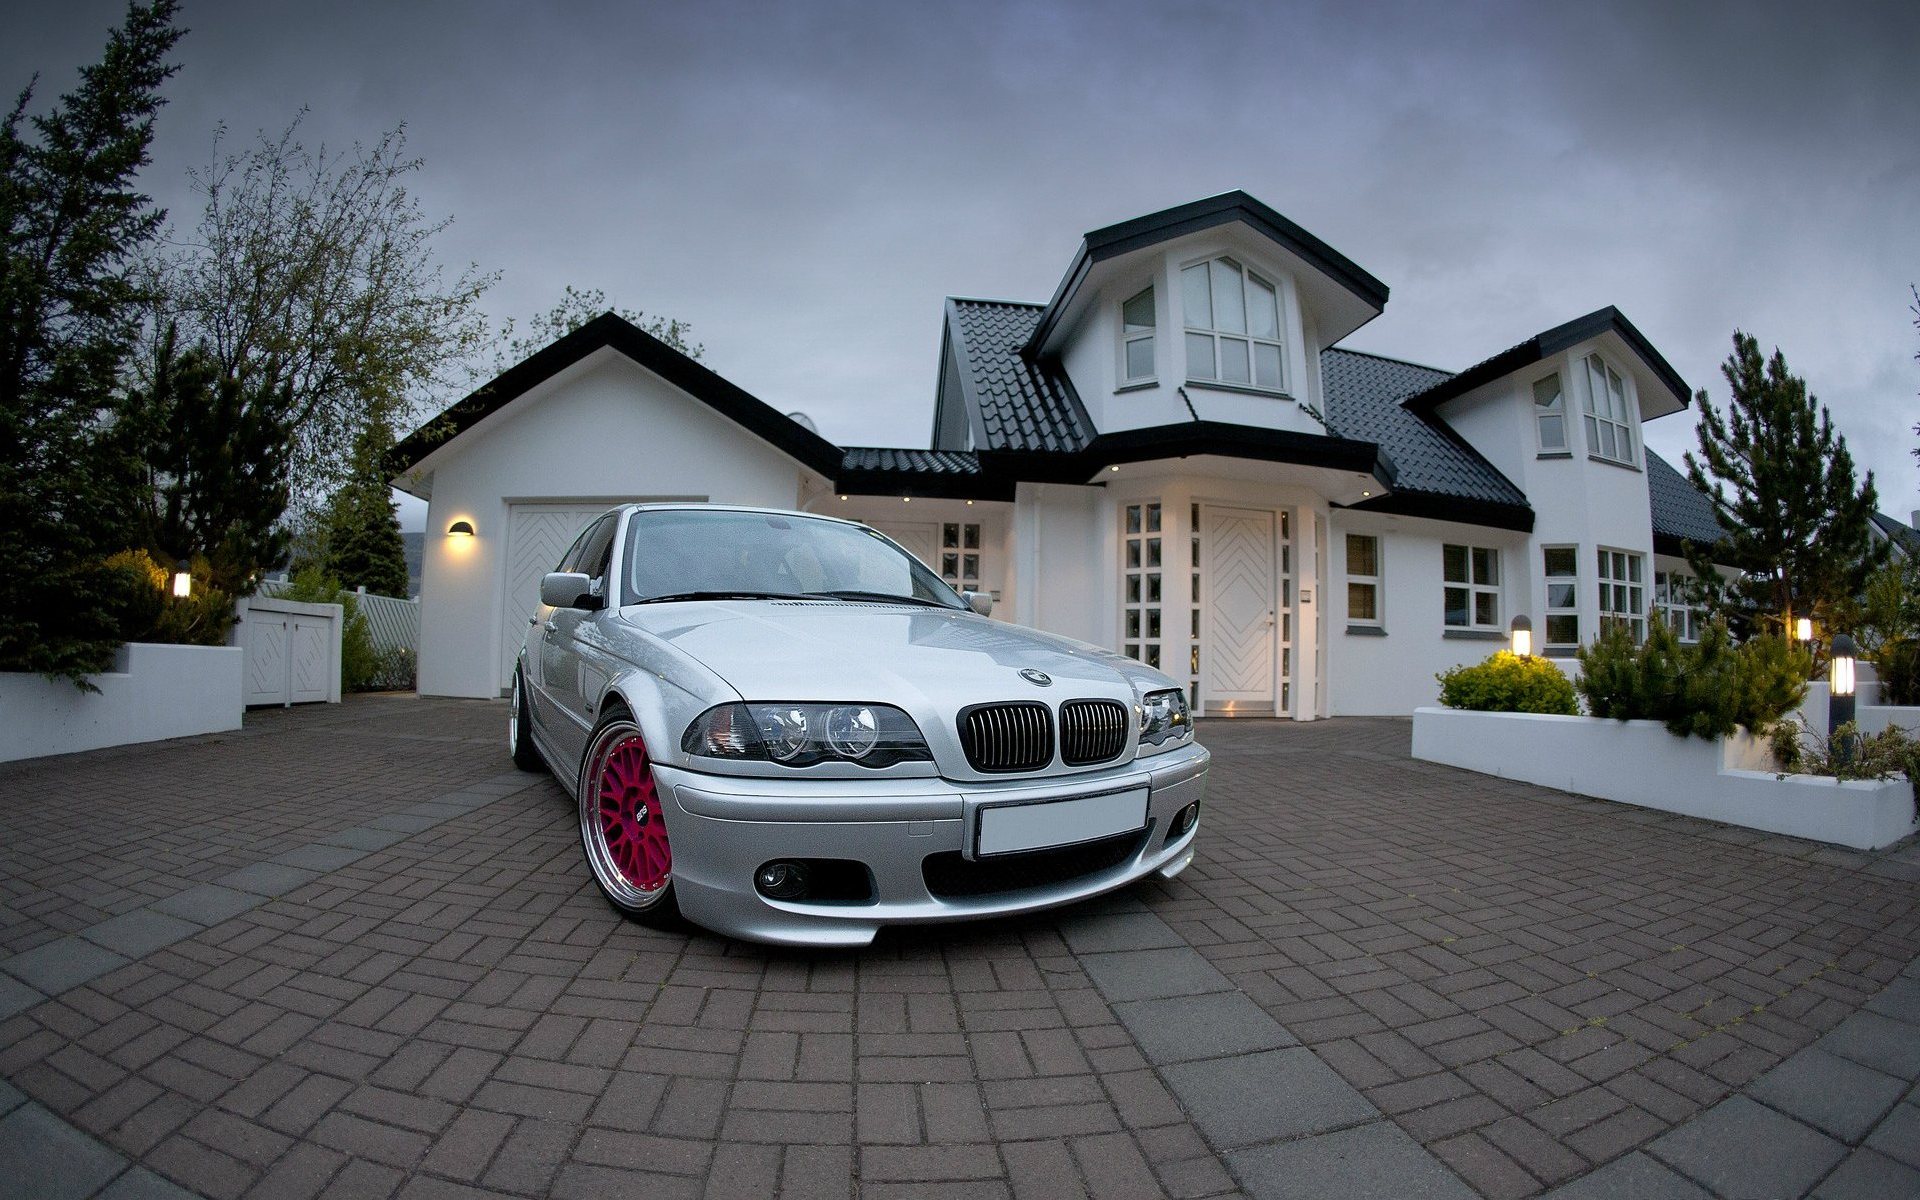 Bmw money. BMW m3 во дворе. Машина дом. Машина возле дома. Красивый дом с машиной.